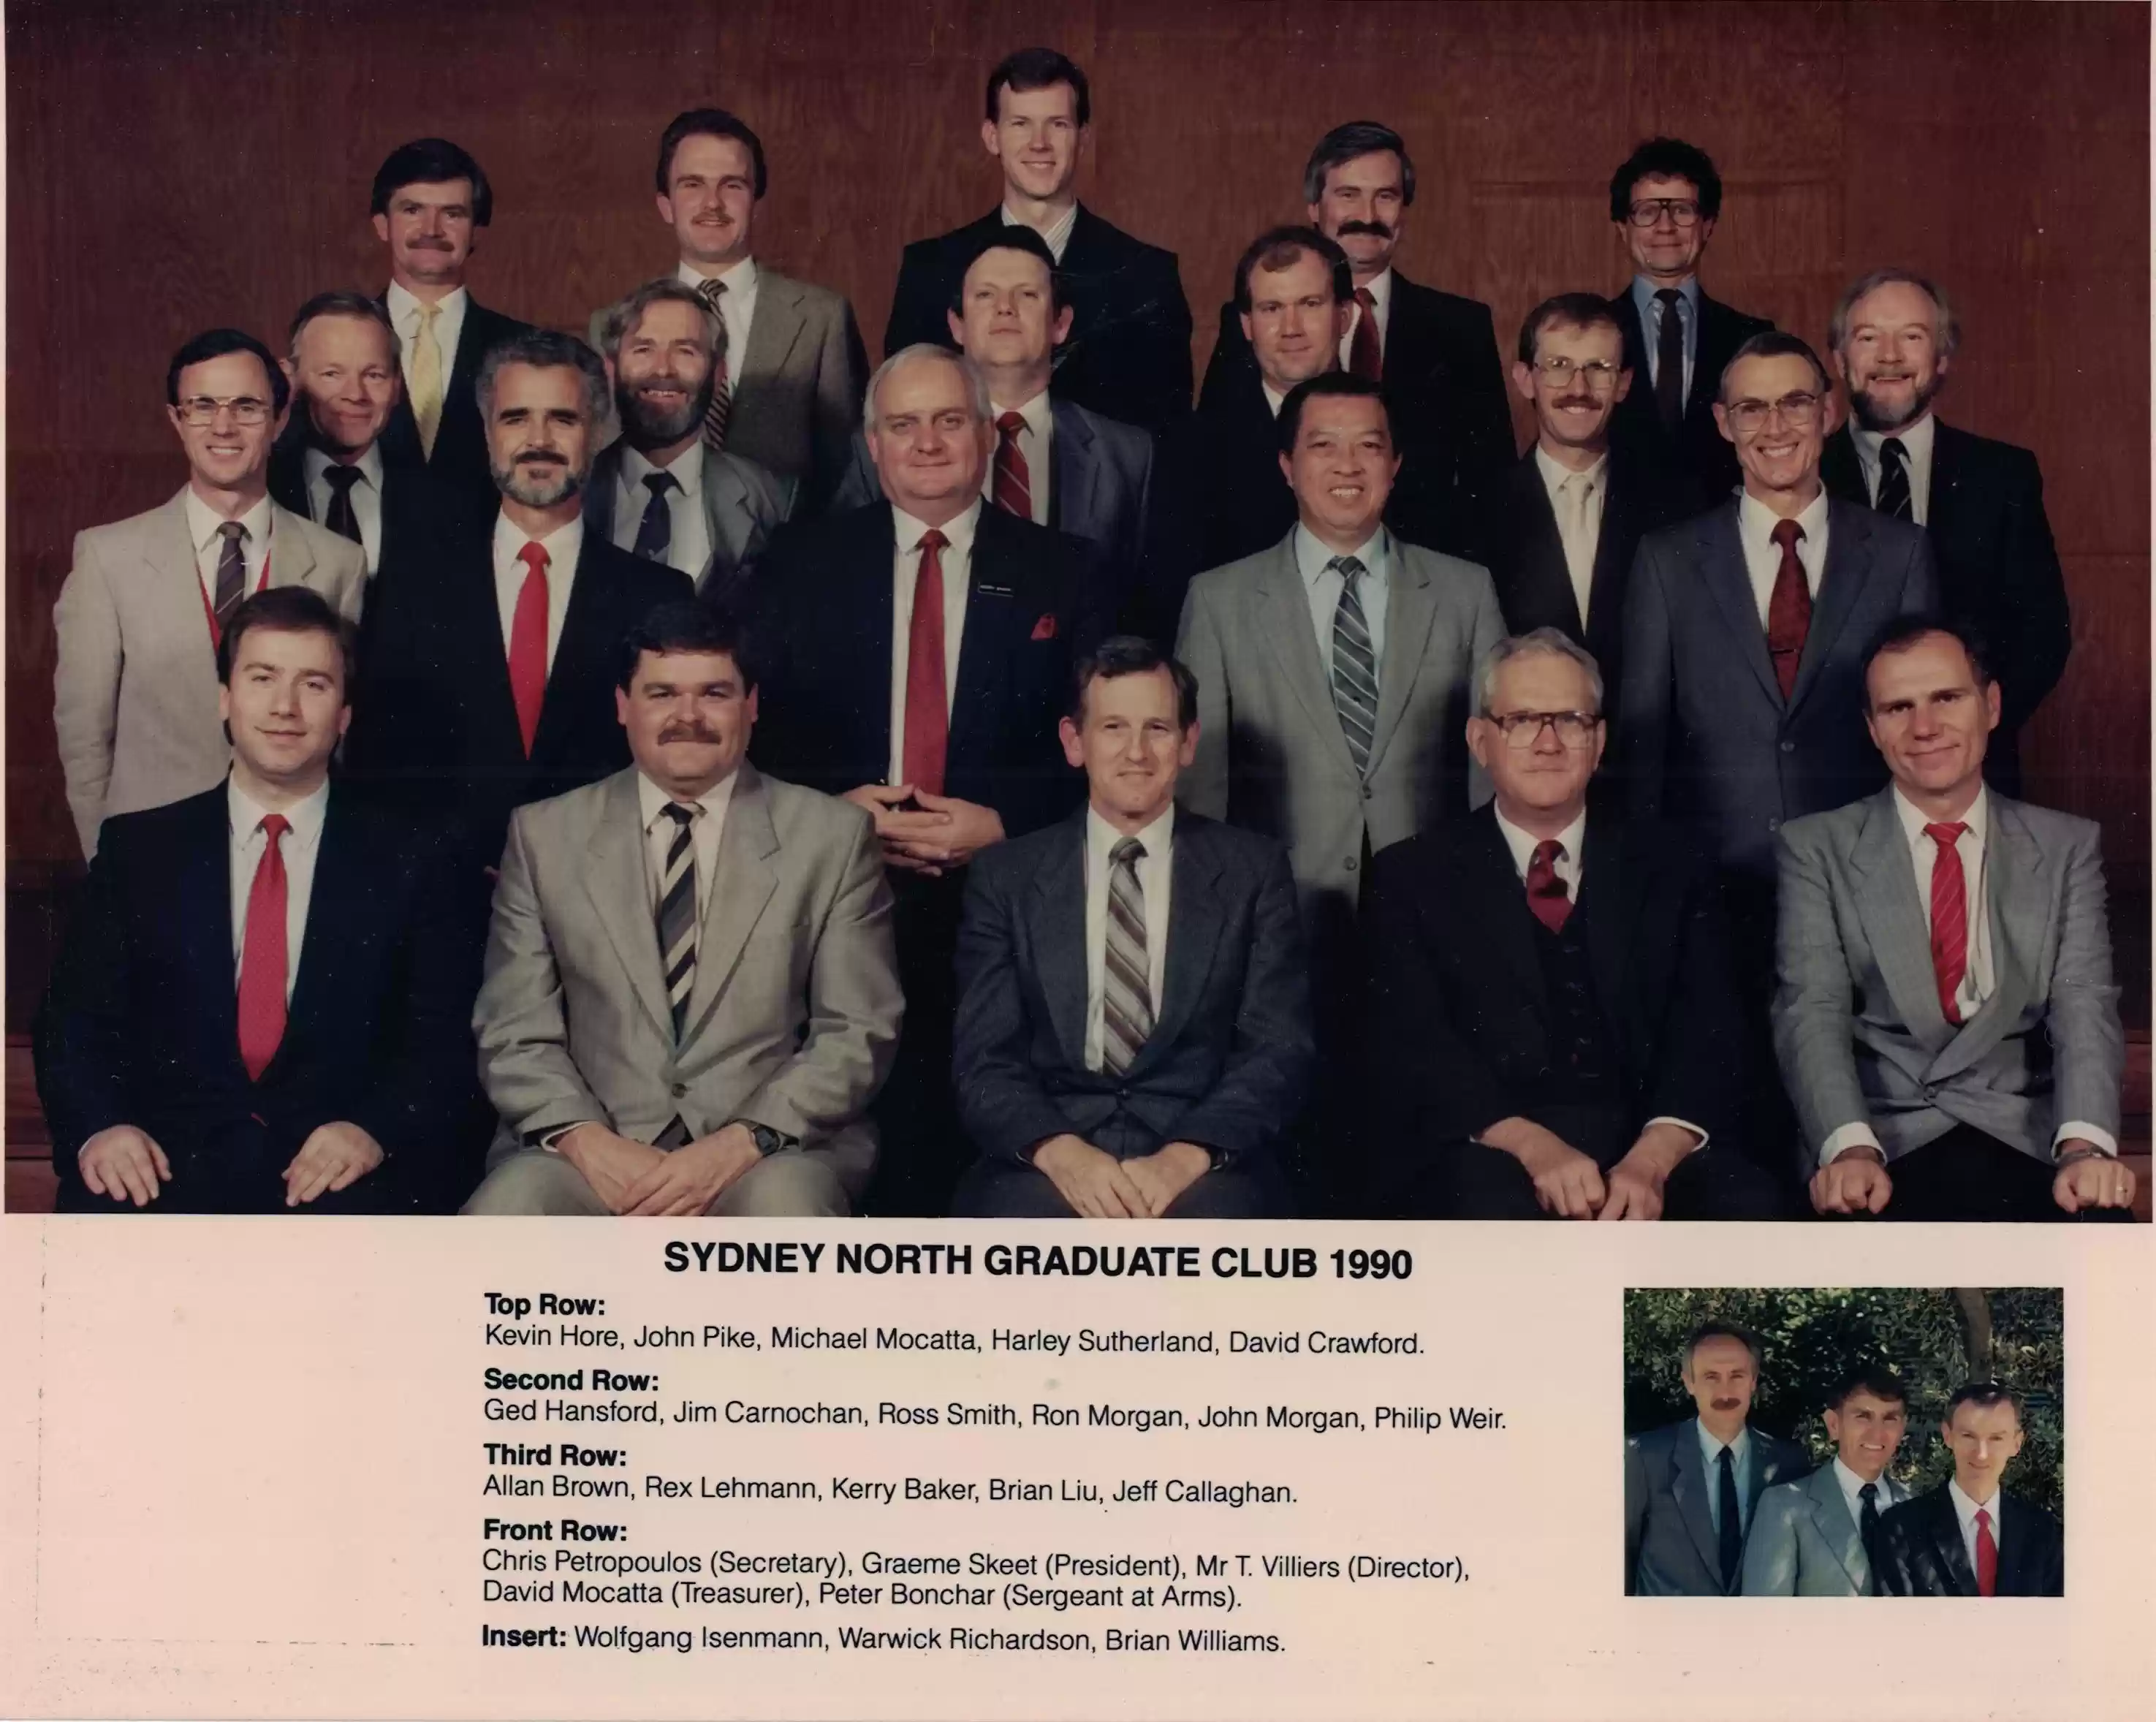 Sydney North Graduate Club 1990